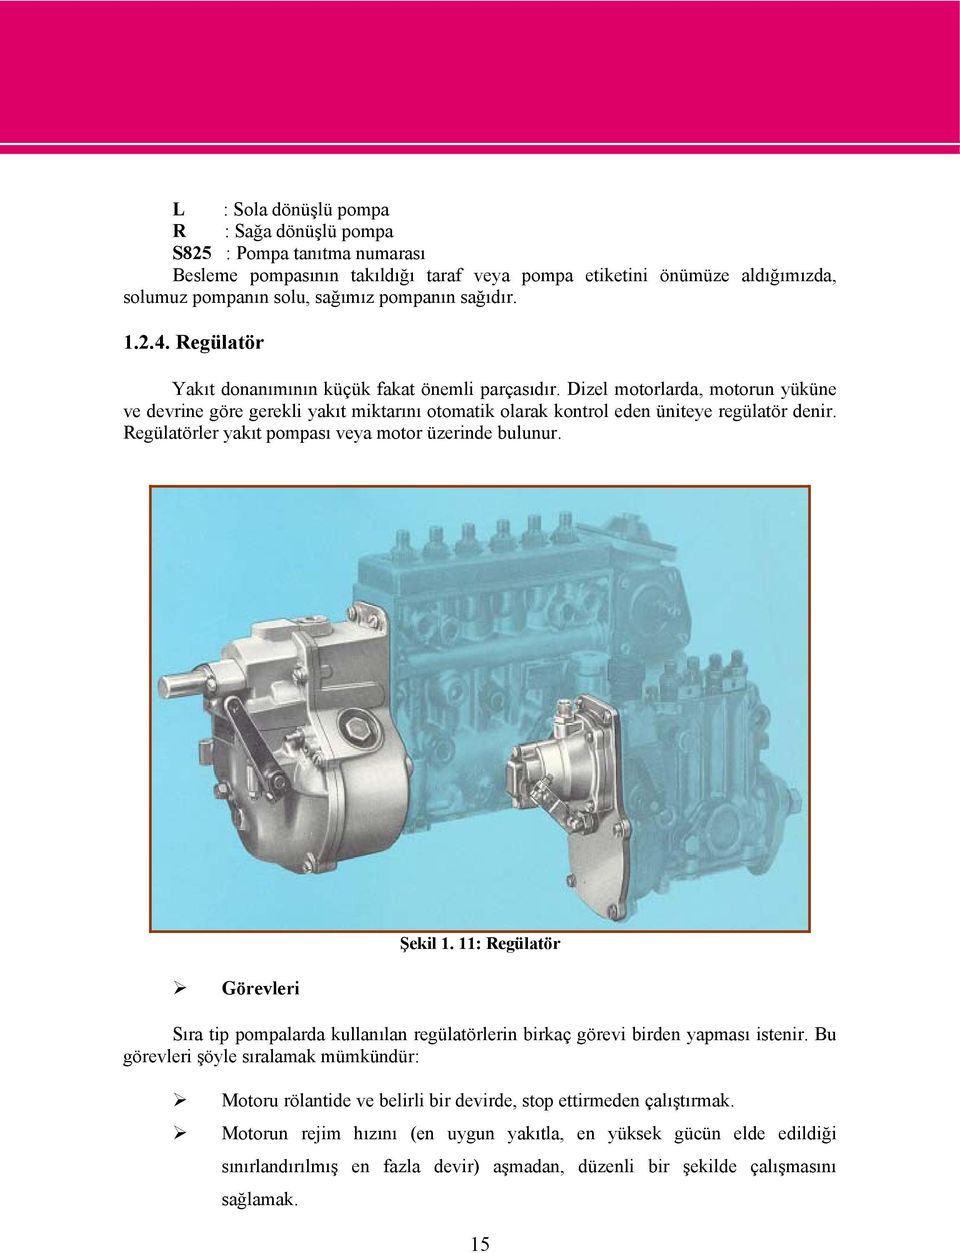 Dizel motorlarda, motorun yüküne ve devrine göre gerekli yakıt miktarını otomatik olarak kontrol eden üniteye regülatör denir. Regülatörler yakıt pompası veya motor üzerinde bulunur.